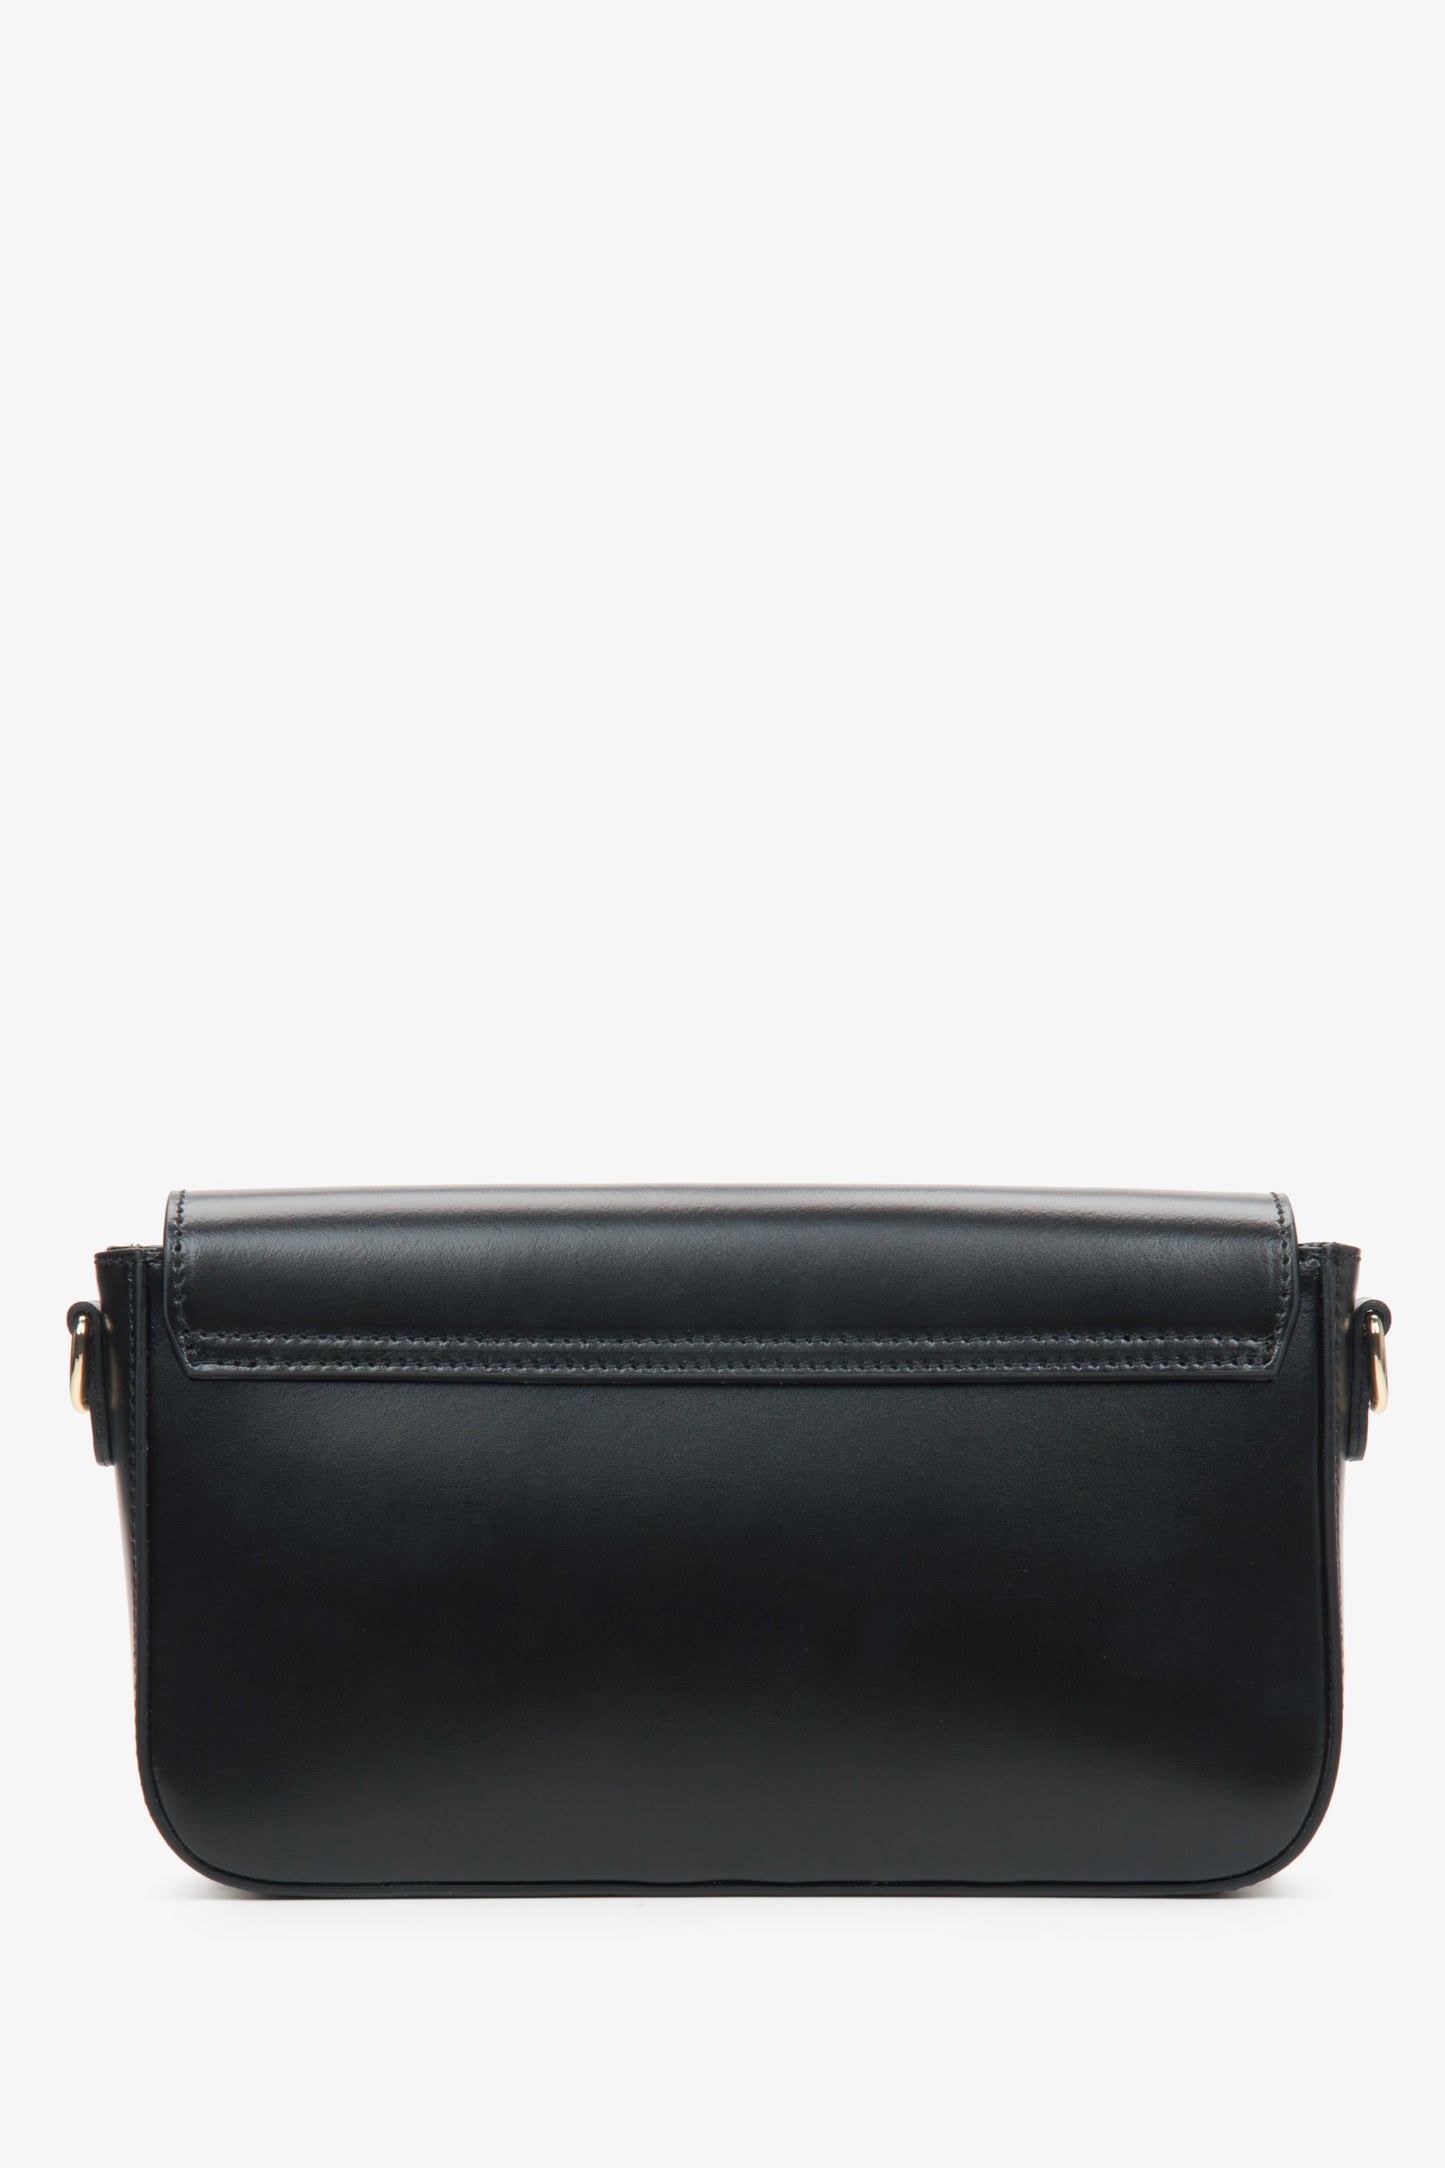 Niewielka damska torebka w czarnym kolorze, stylizowana na bagietkę.